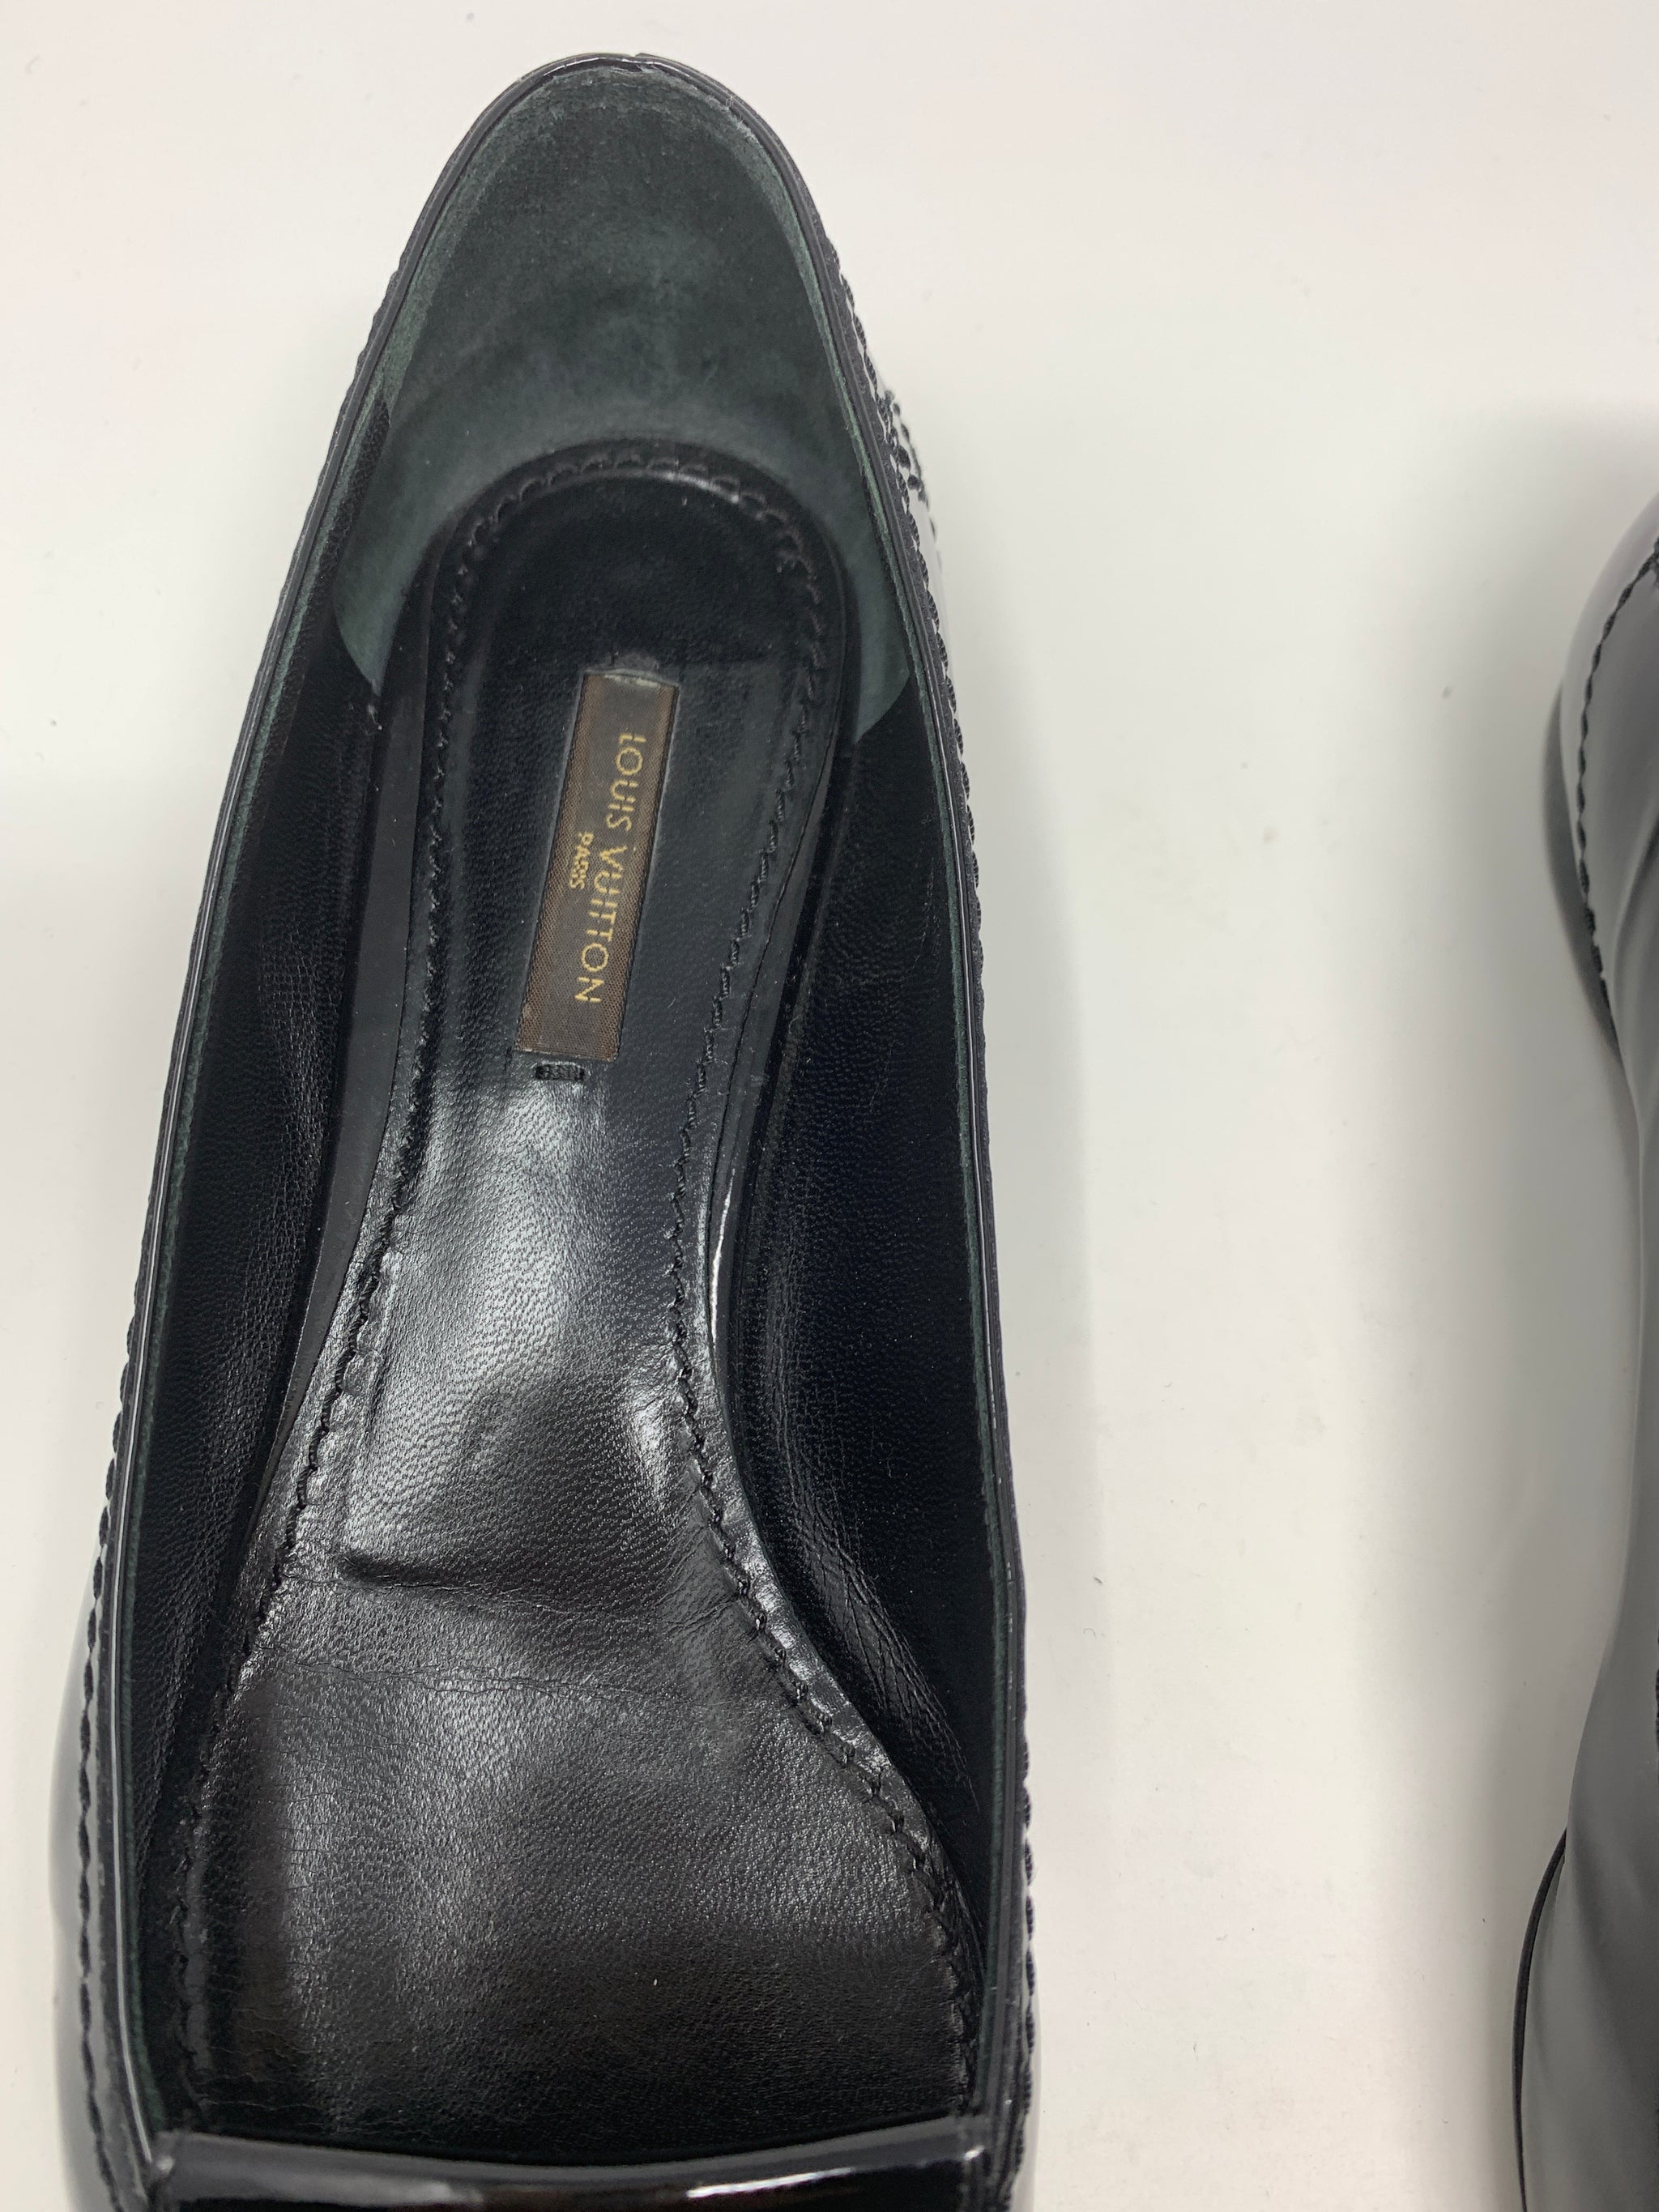 Louis Vuitton Black Patent Leather Shoes!